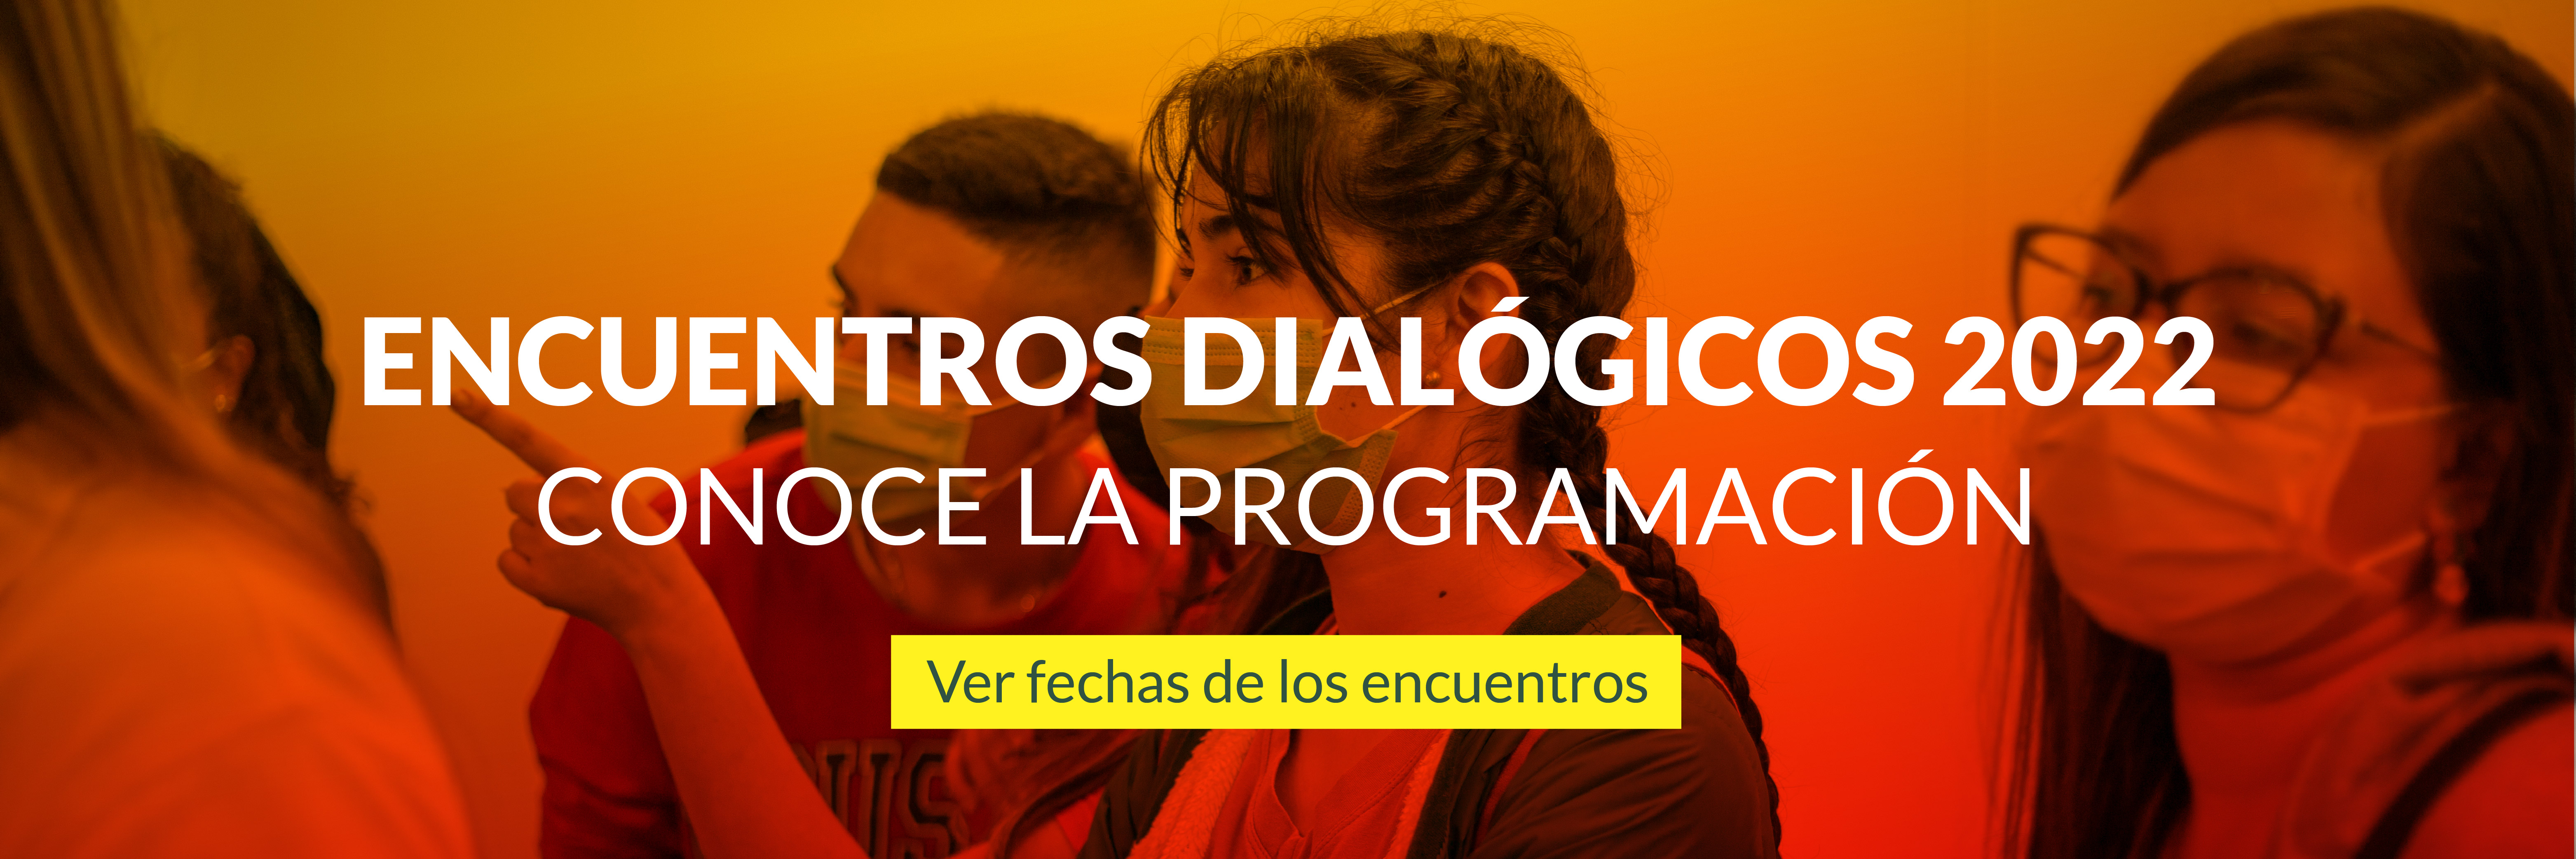 Encuentros Dialogicos 2022 Conoce la programacion